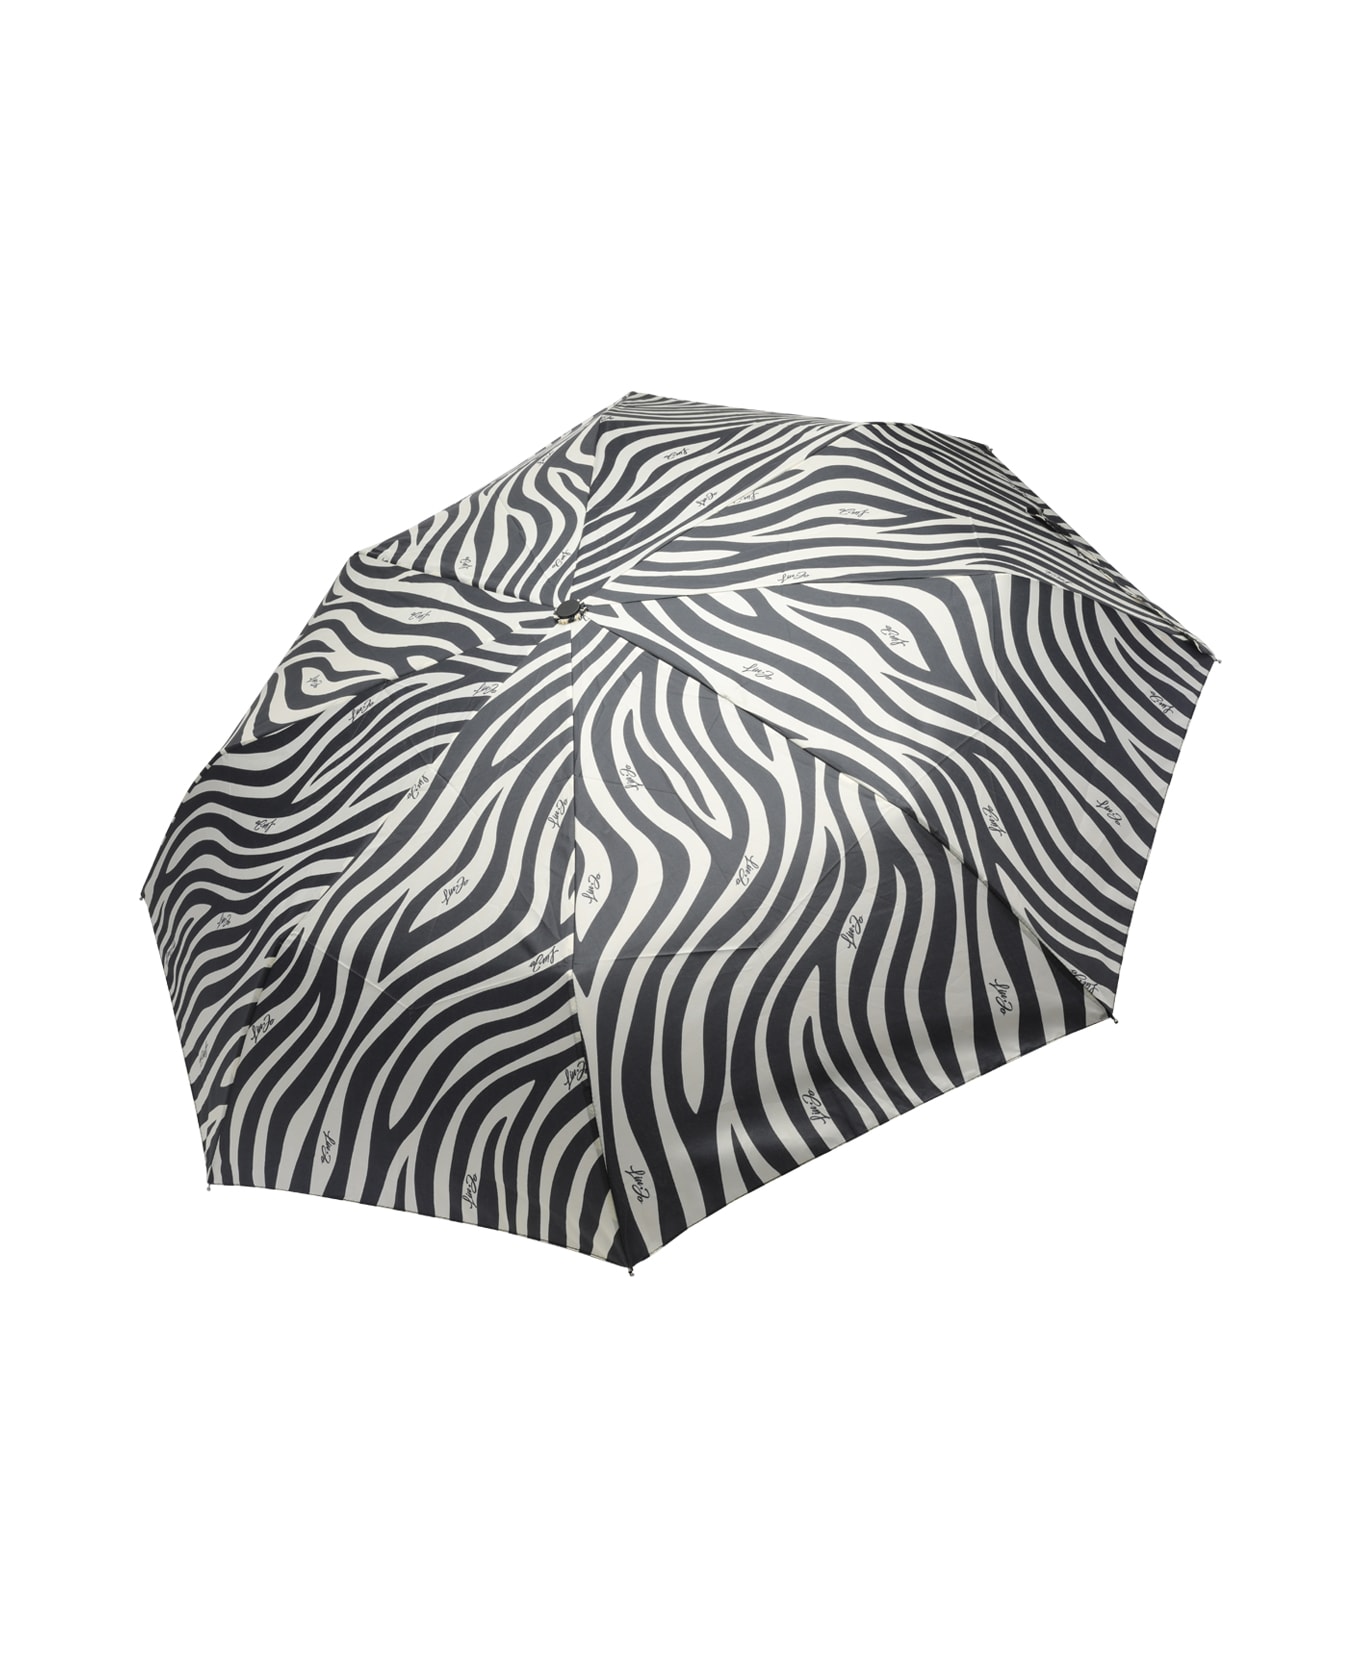 Liu-Jo Zebra Motif Umbrella - Black 傘